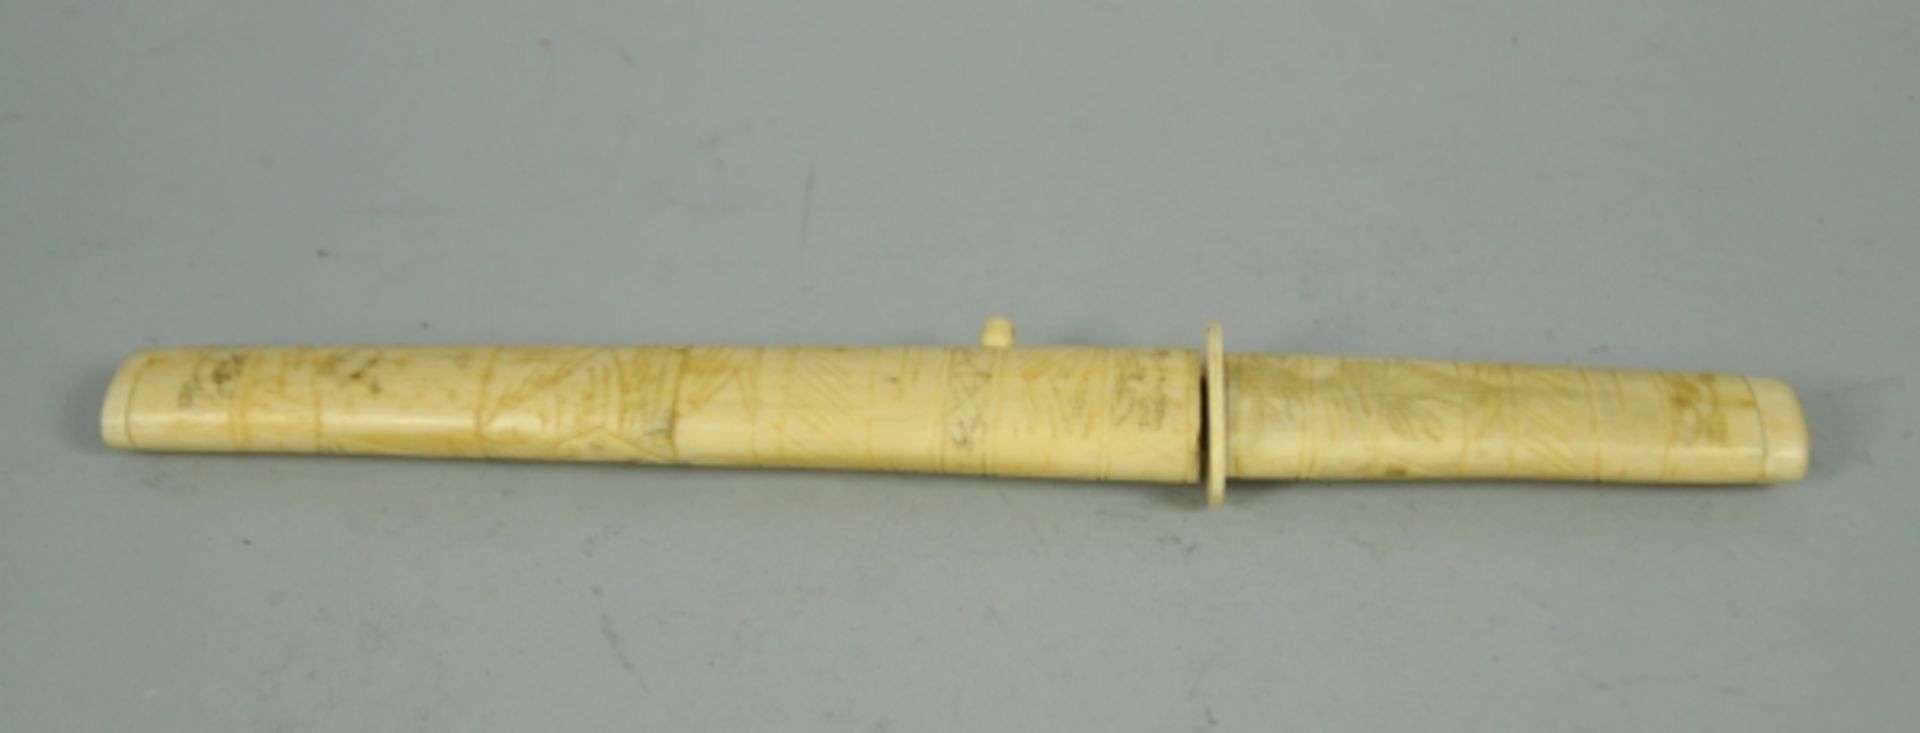 DOLCH Griff u. Scheide aus beschnitztem Bein, Stahlklinge, Asien, L 31cm - Bild 2 aus 3